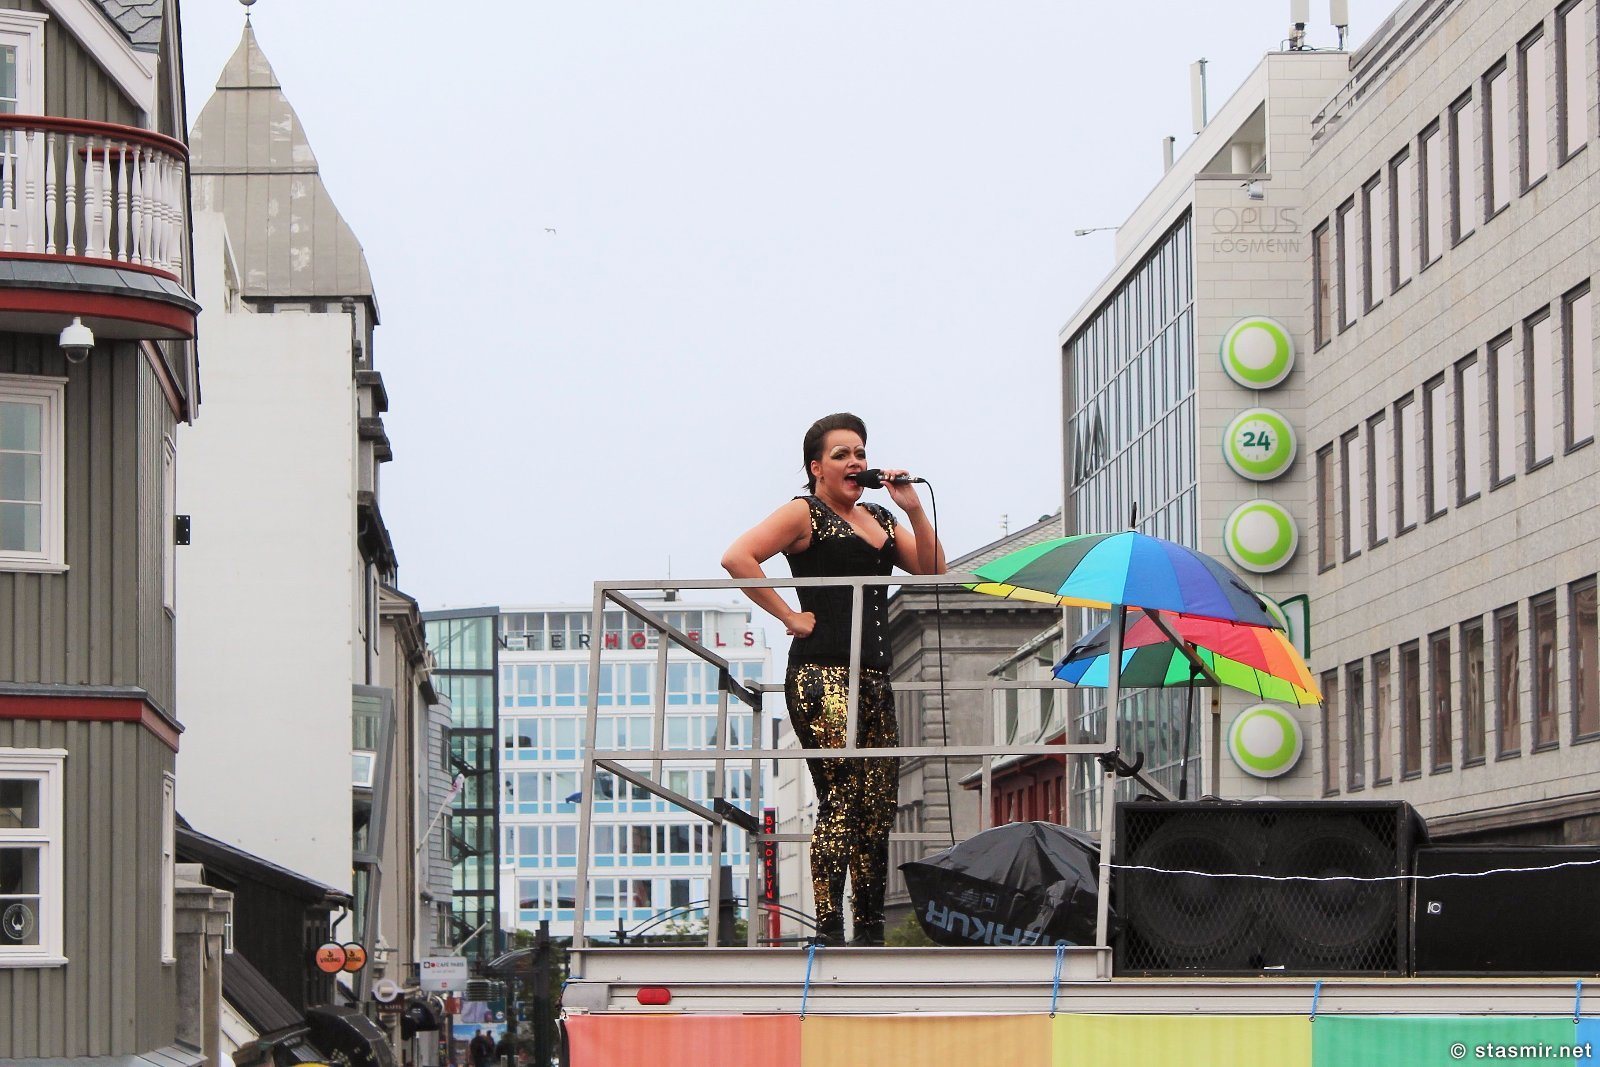 Гей-прайд 2015, Рейкьявик, селебрити в Исландии, главная улица Рейкьявика, праздники в Исландии, гей-прайд в Исландии, gay pride 2015, Reykjavik, равноправие полов, туры в Исландию, портрет исландца, Photo Stasmir